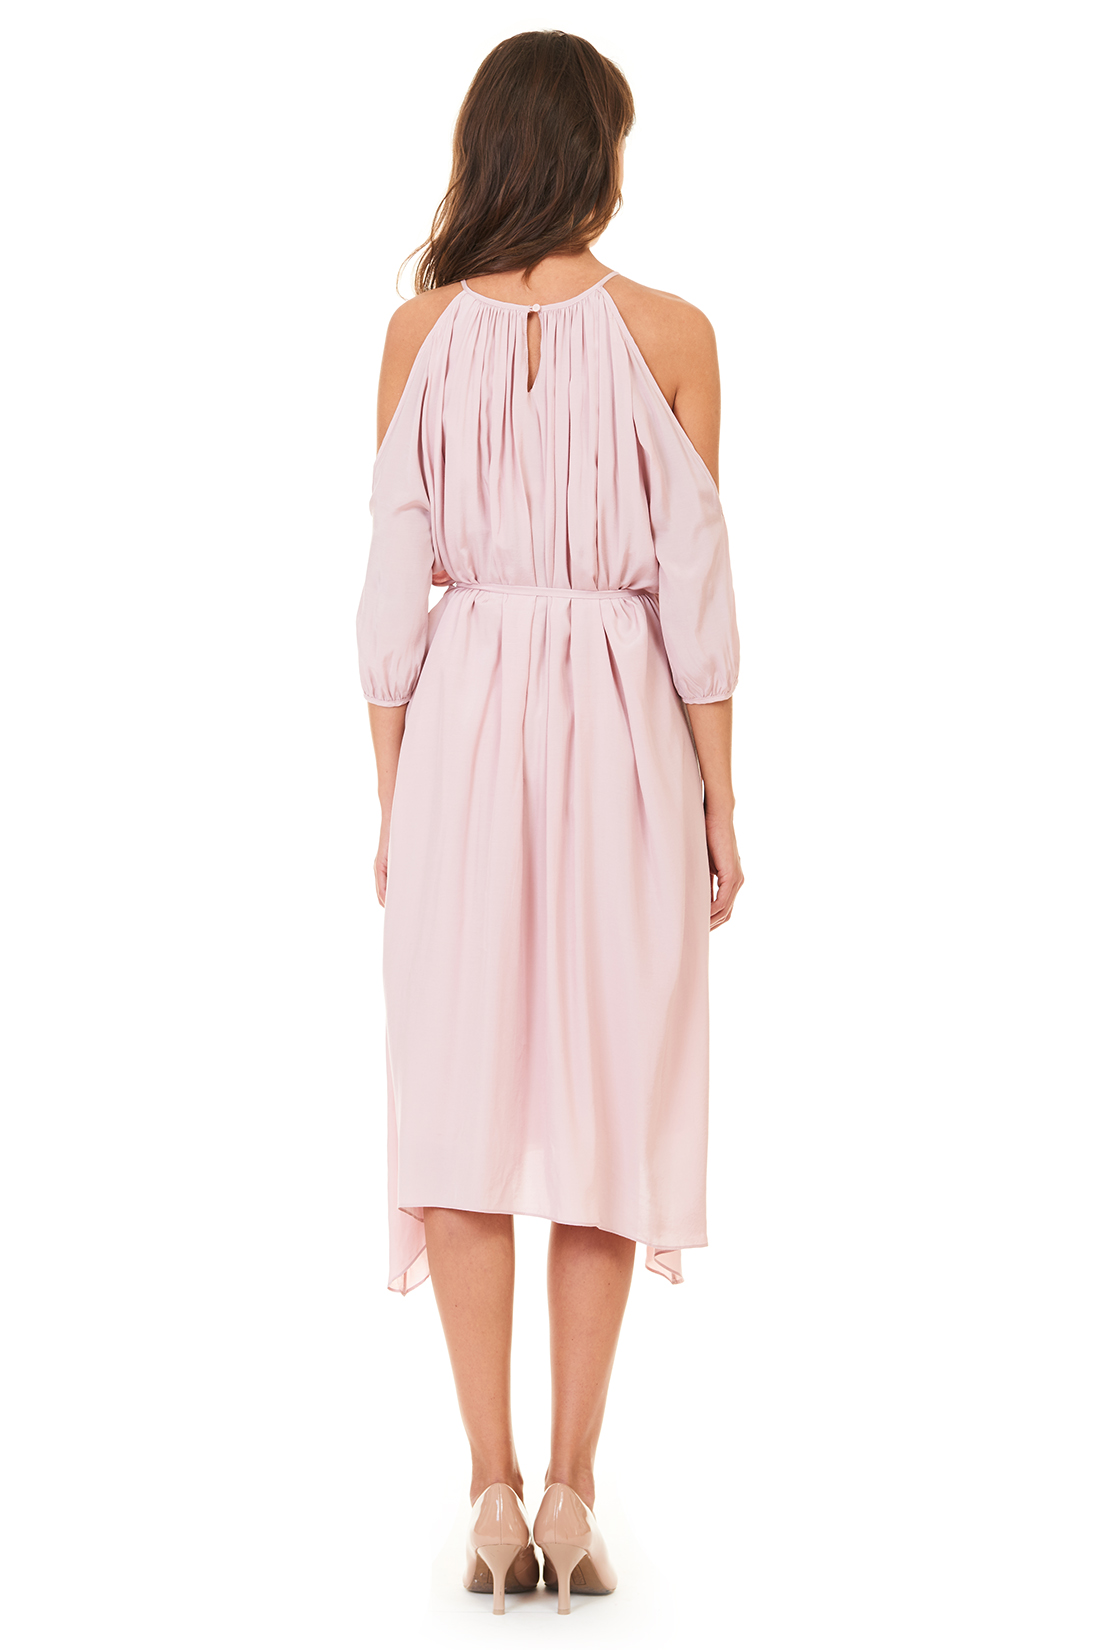 Платье-туника с открытыми плечами (арт. baon B457105), размер XL, цвет розовый Платье-туника с открытыми плечами (арт. baon B457105) - фото 2